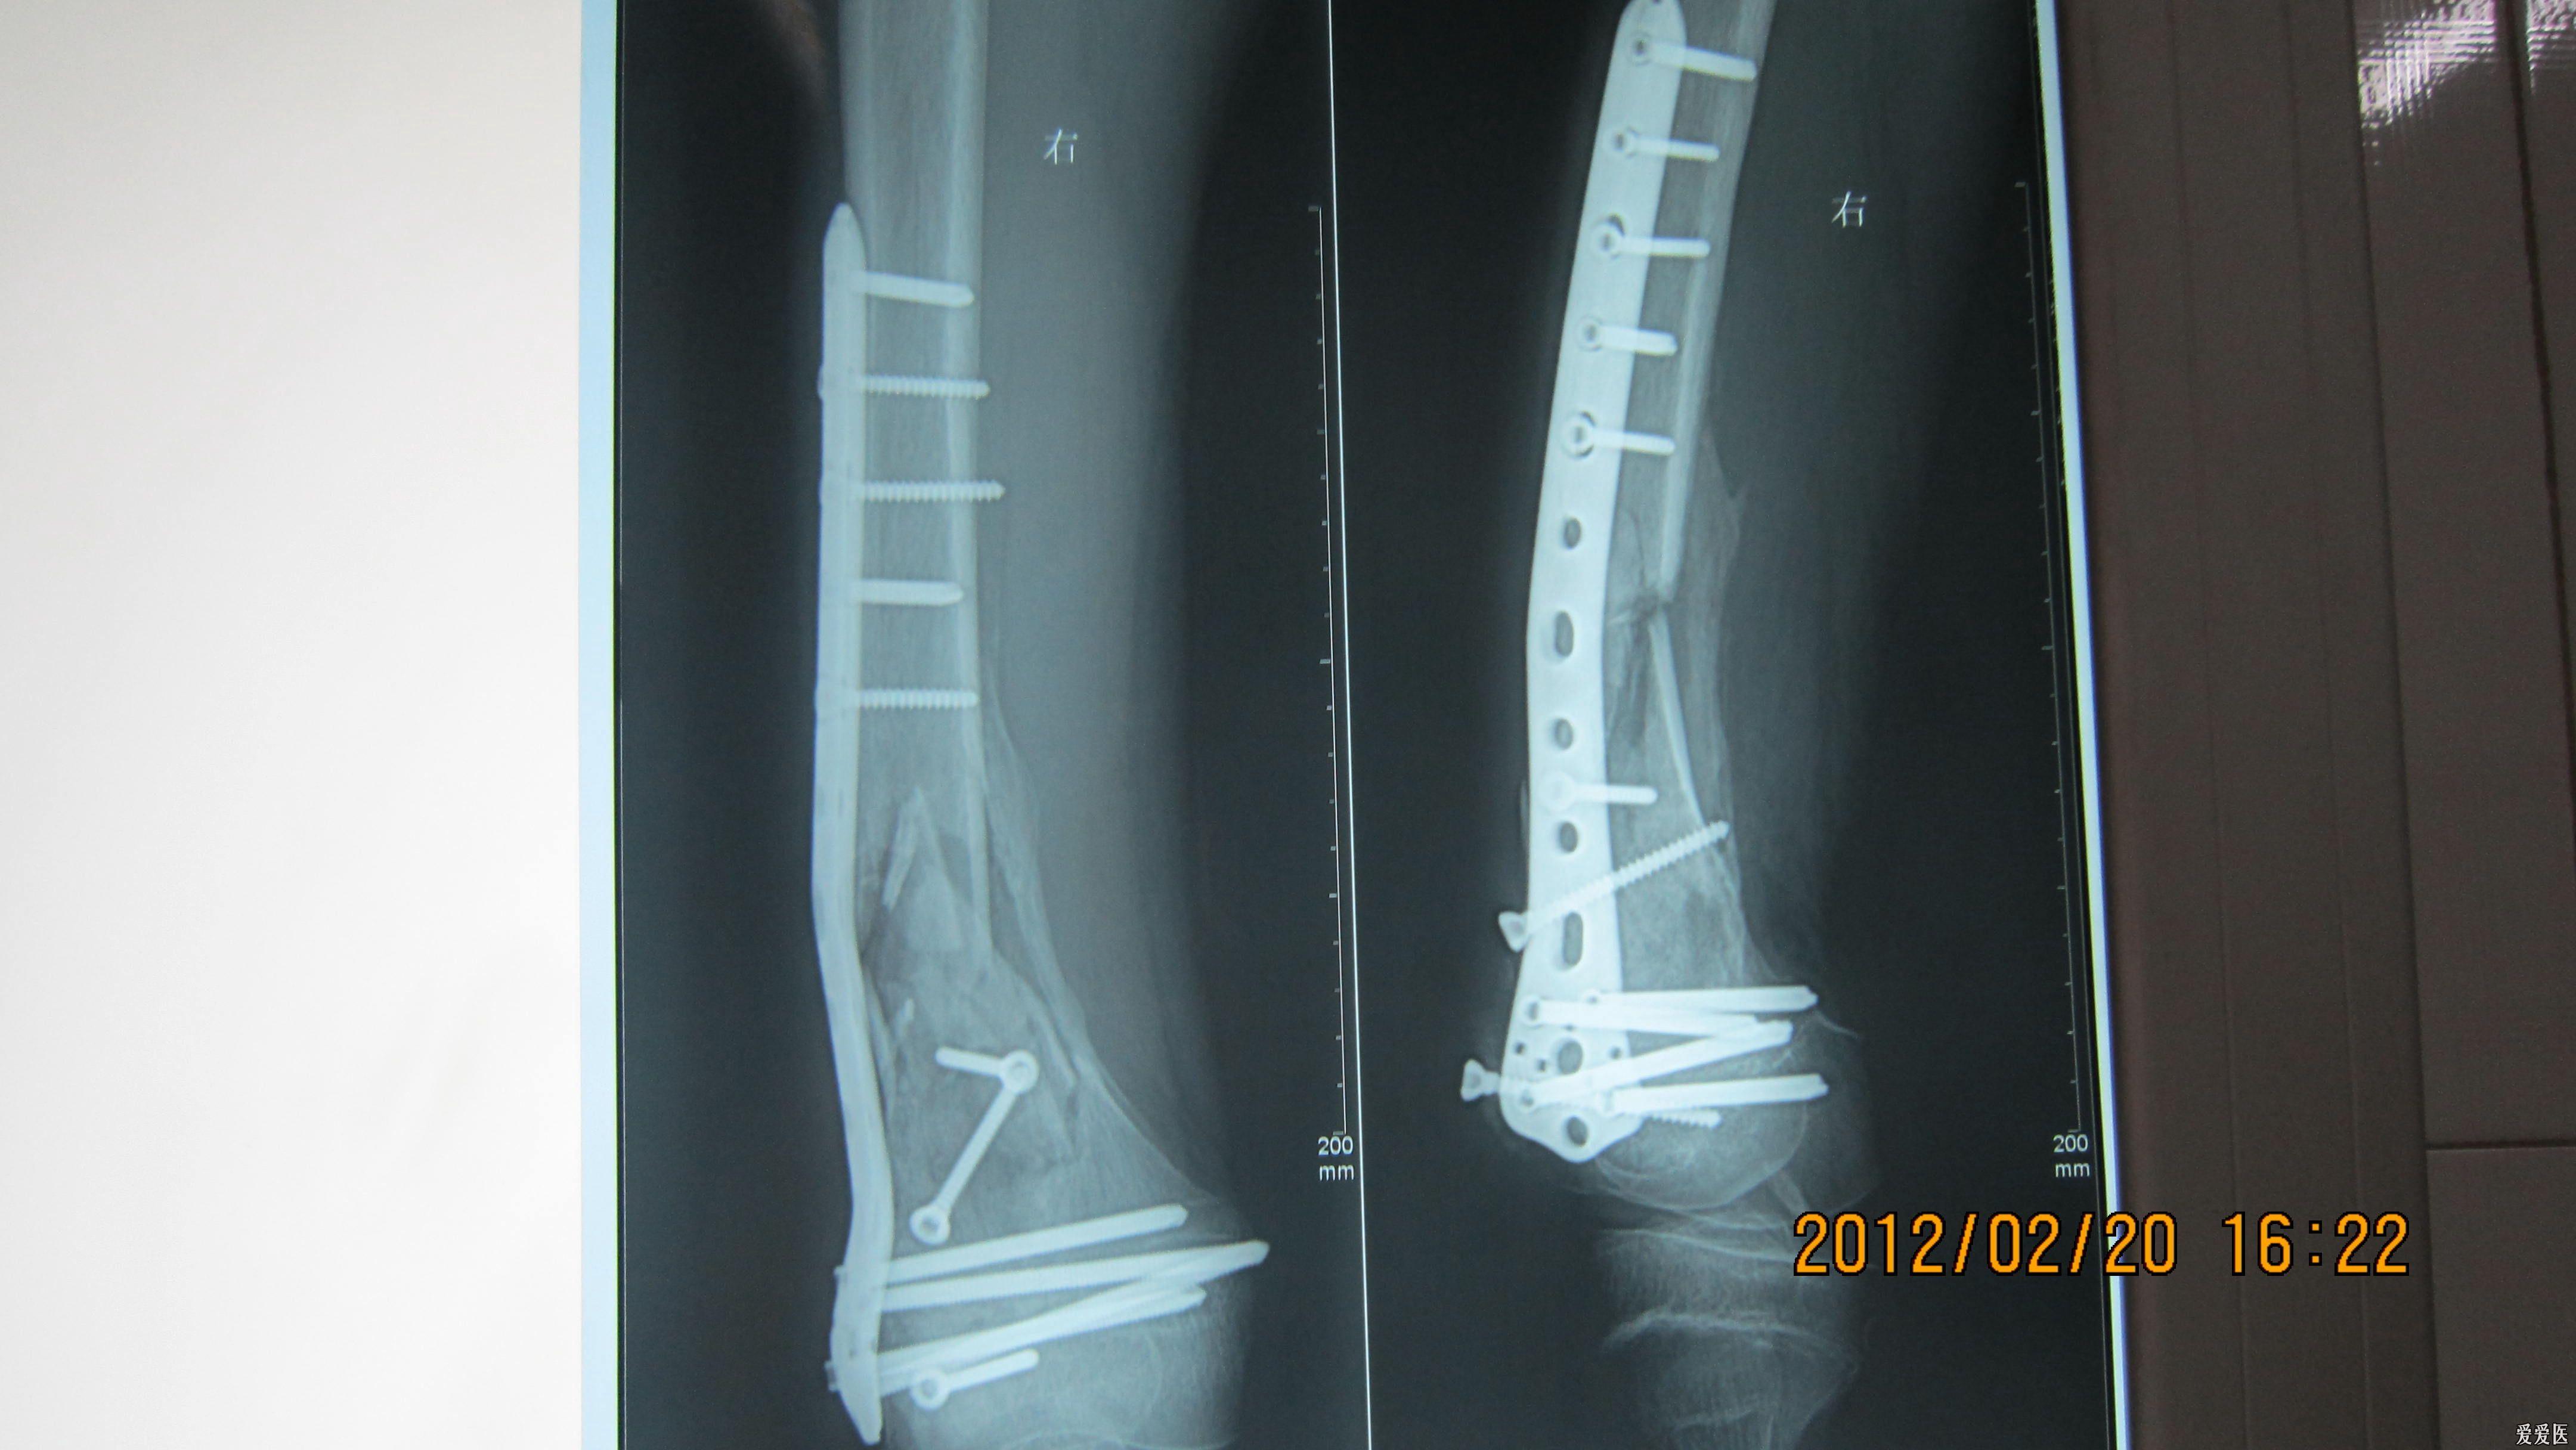 股骨髁骨折图片